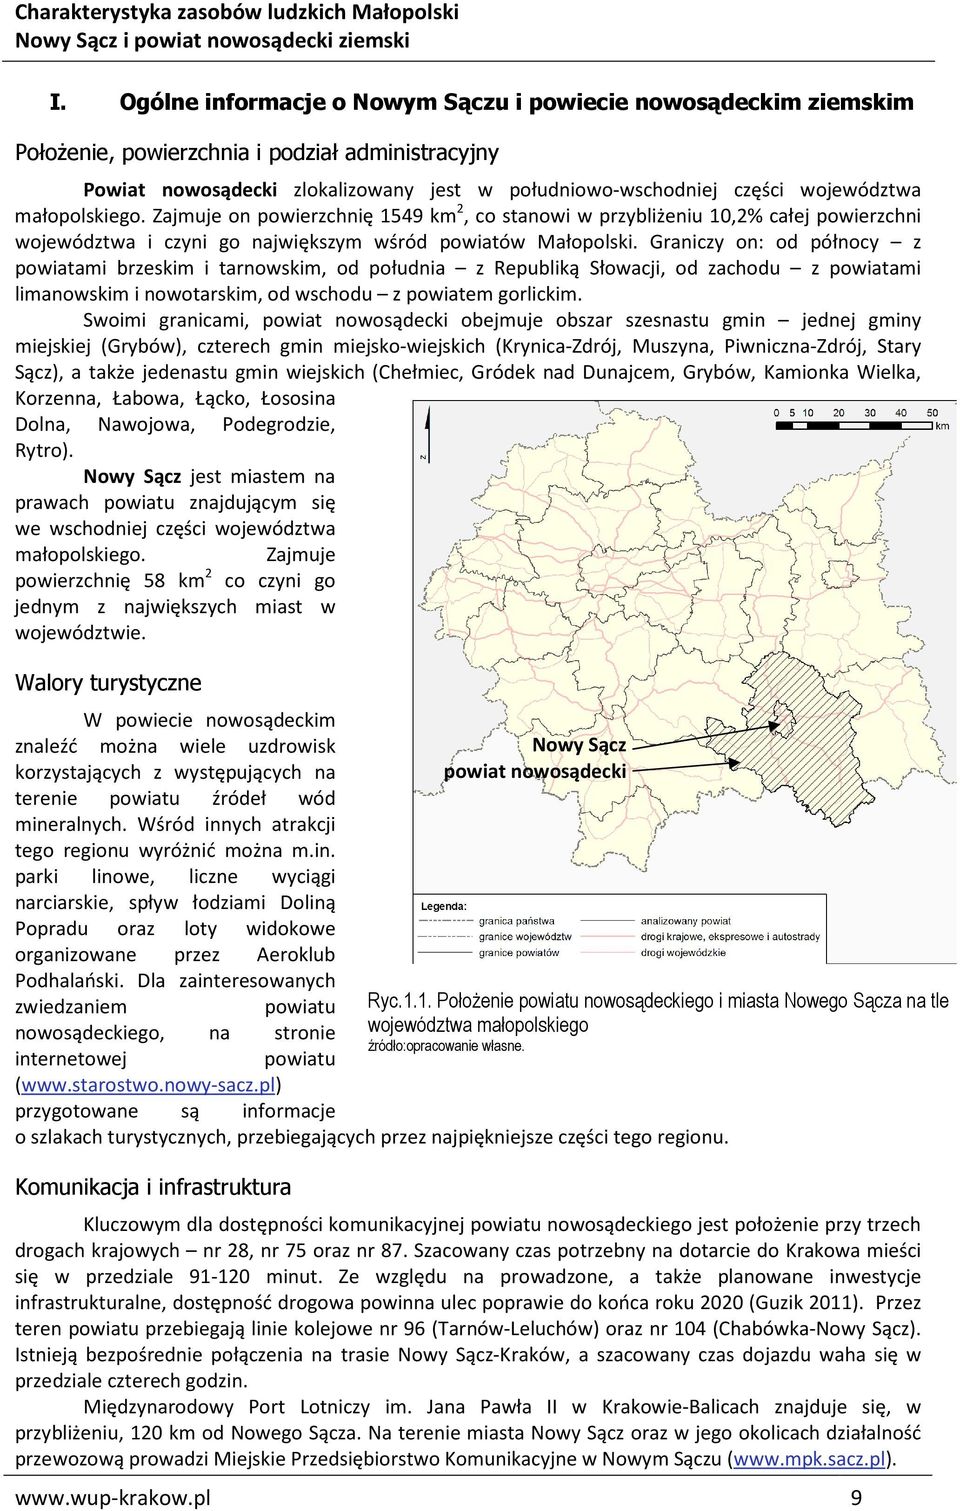 Graniczy on: od północy z powiatami brzeskim i tarnowskim, od południa z Republiką Słowacji, od zachodu z powiatami limanowskim i nowotarskim, od wschodu z powiatem gorlickim.